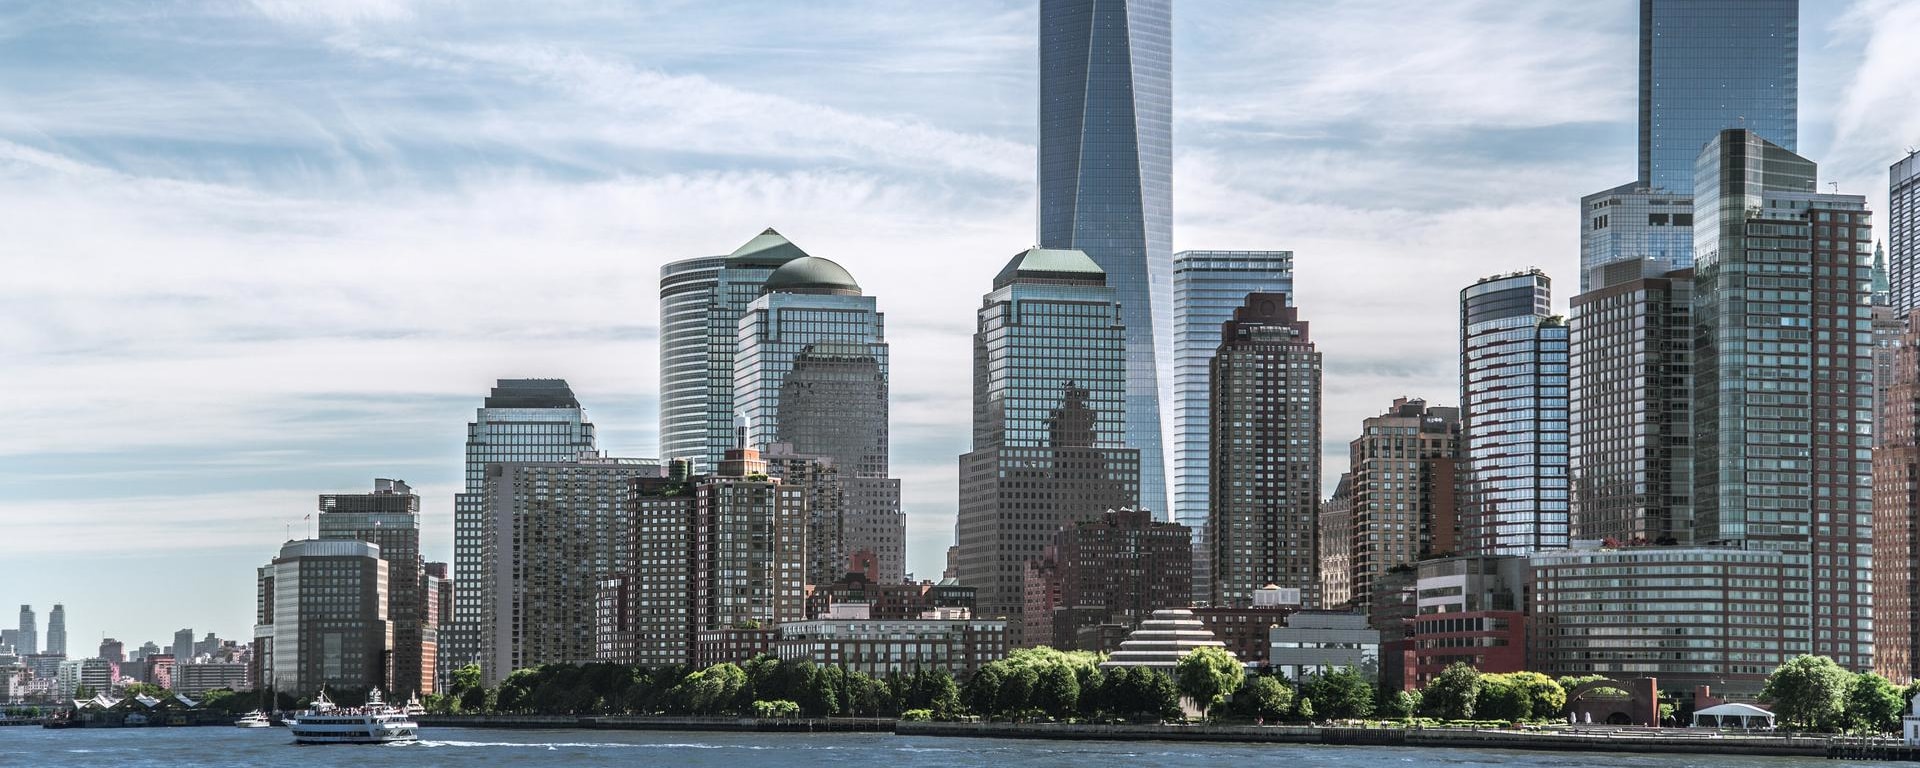 Vontobel Asset Management in New York - New York's skyscrapers